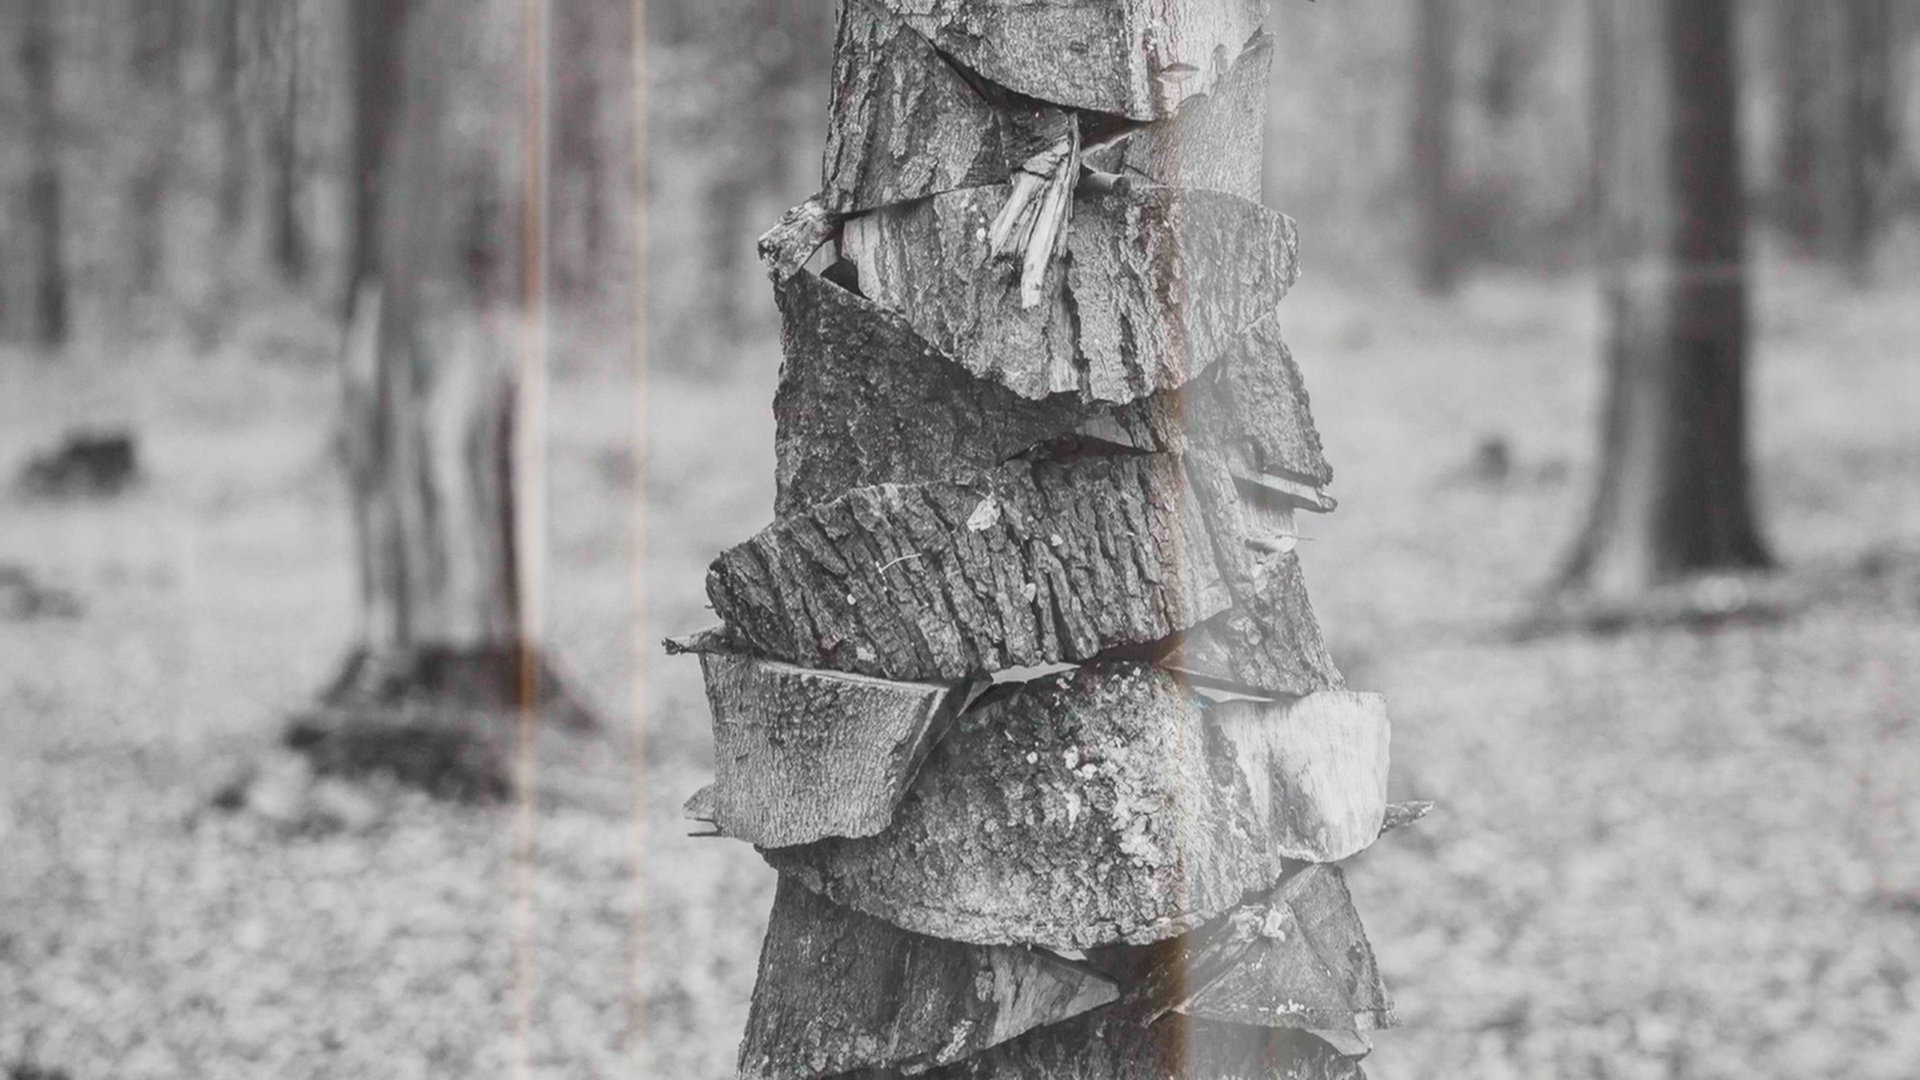 Wystawa fotografii „Prace leśne” Michała Łuczka dotyczącą tematu polskich lasów.